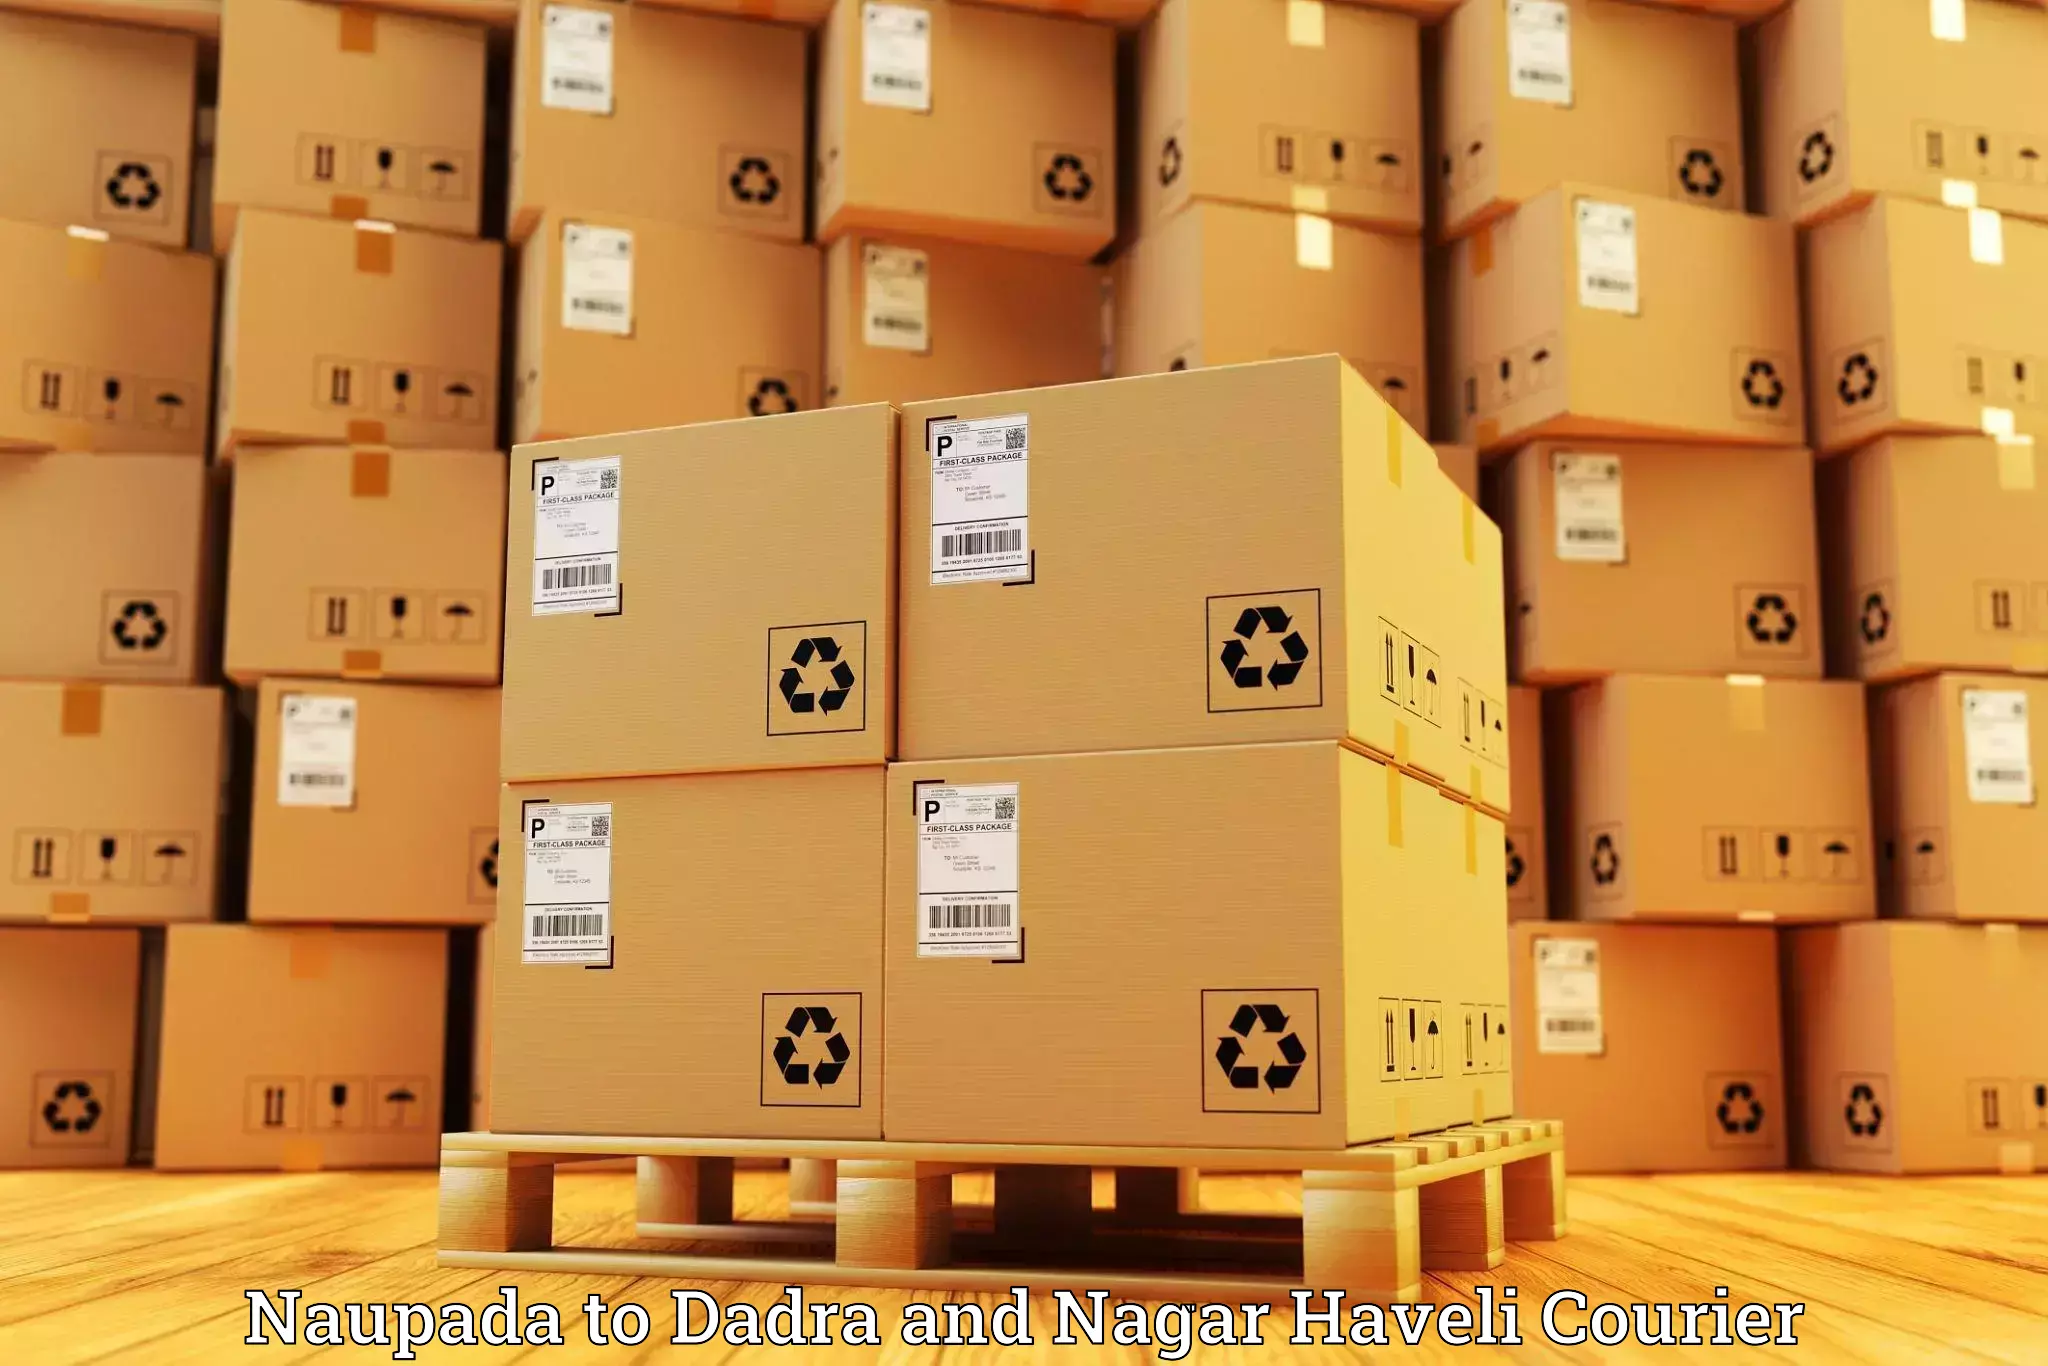 Ocean freight courier Naupada to Dadra and Nagar Haveli